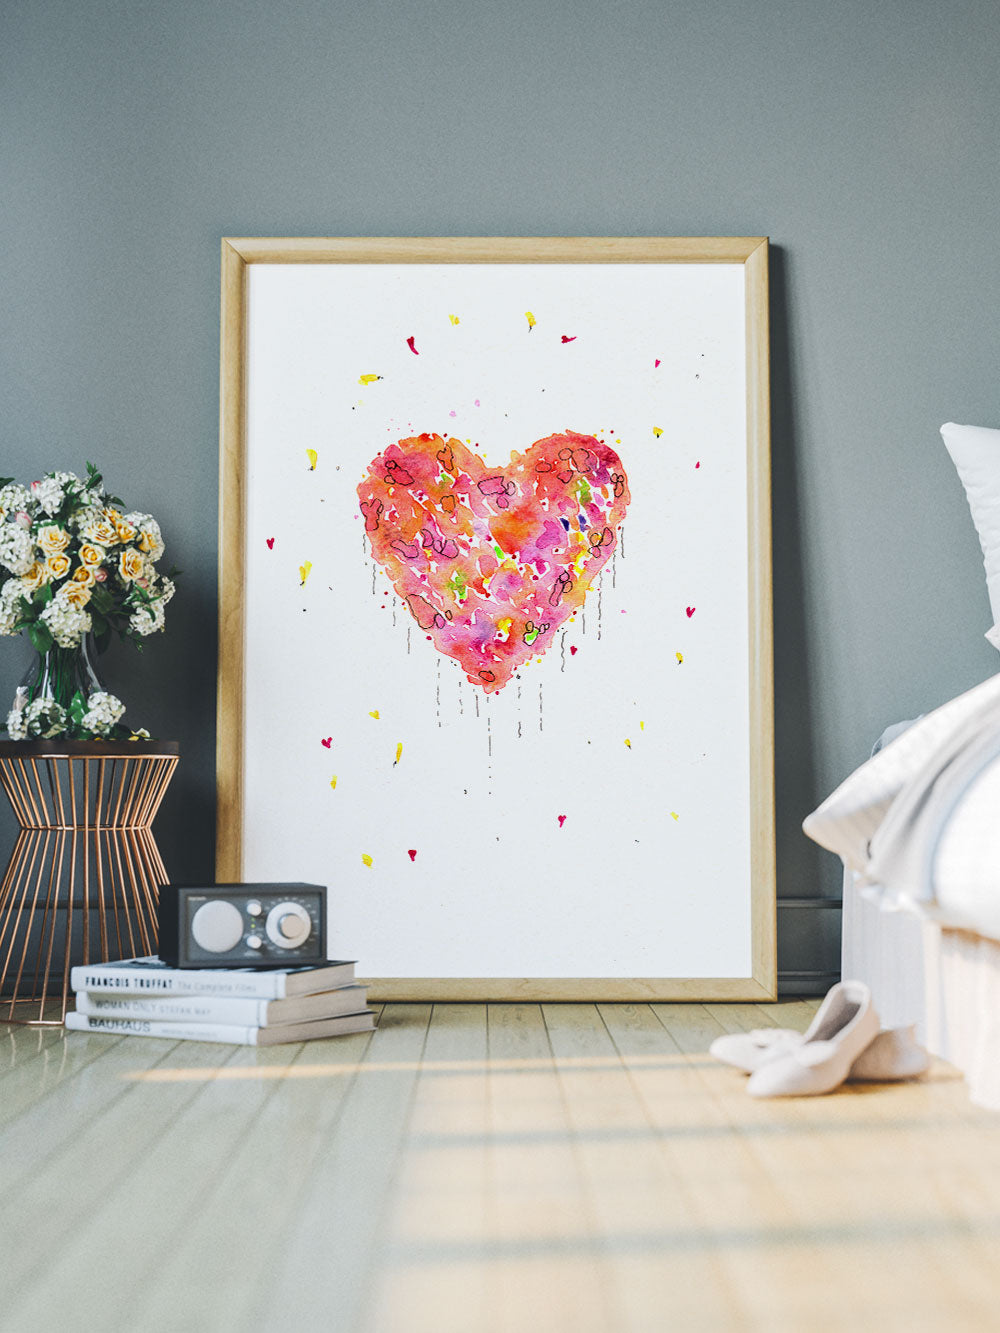 Enlightened Heart Watercolour Fine Art in a bedroom